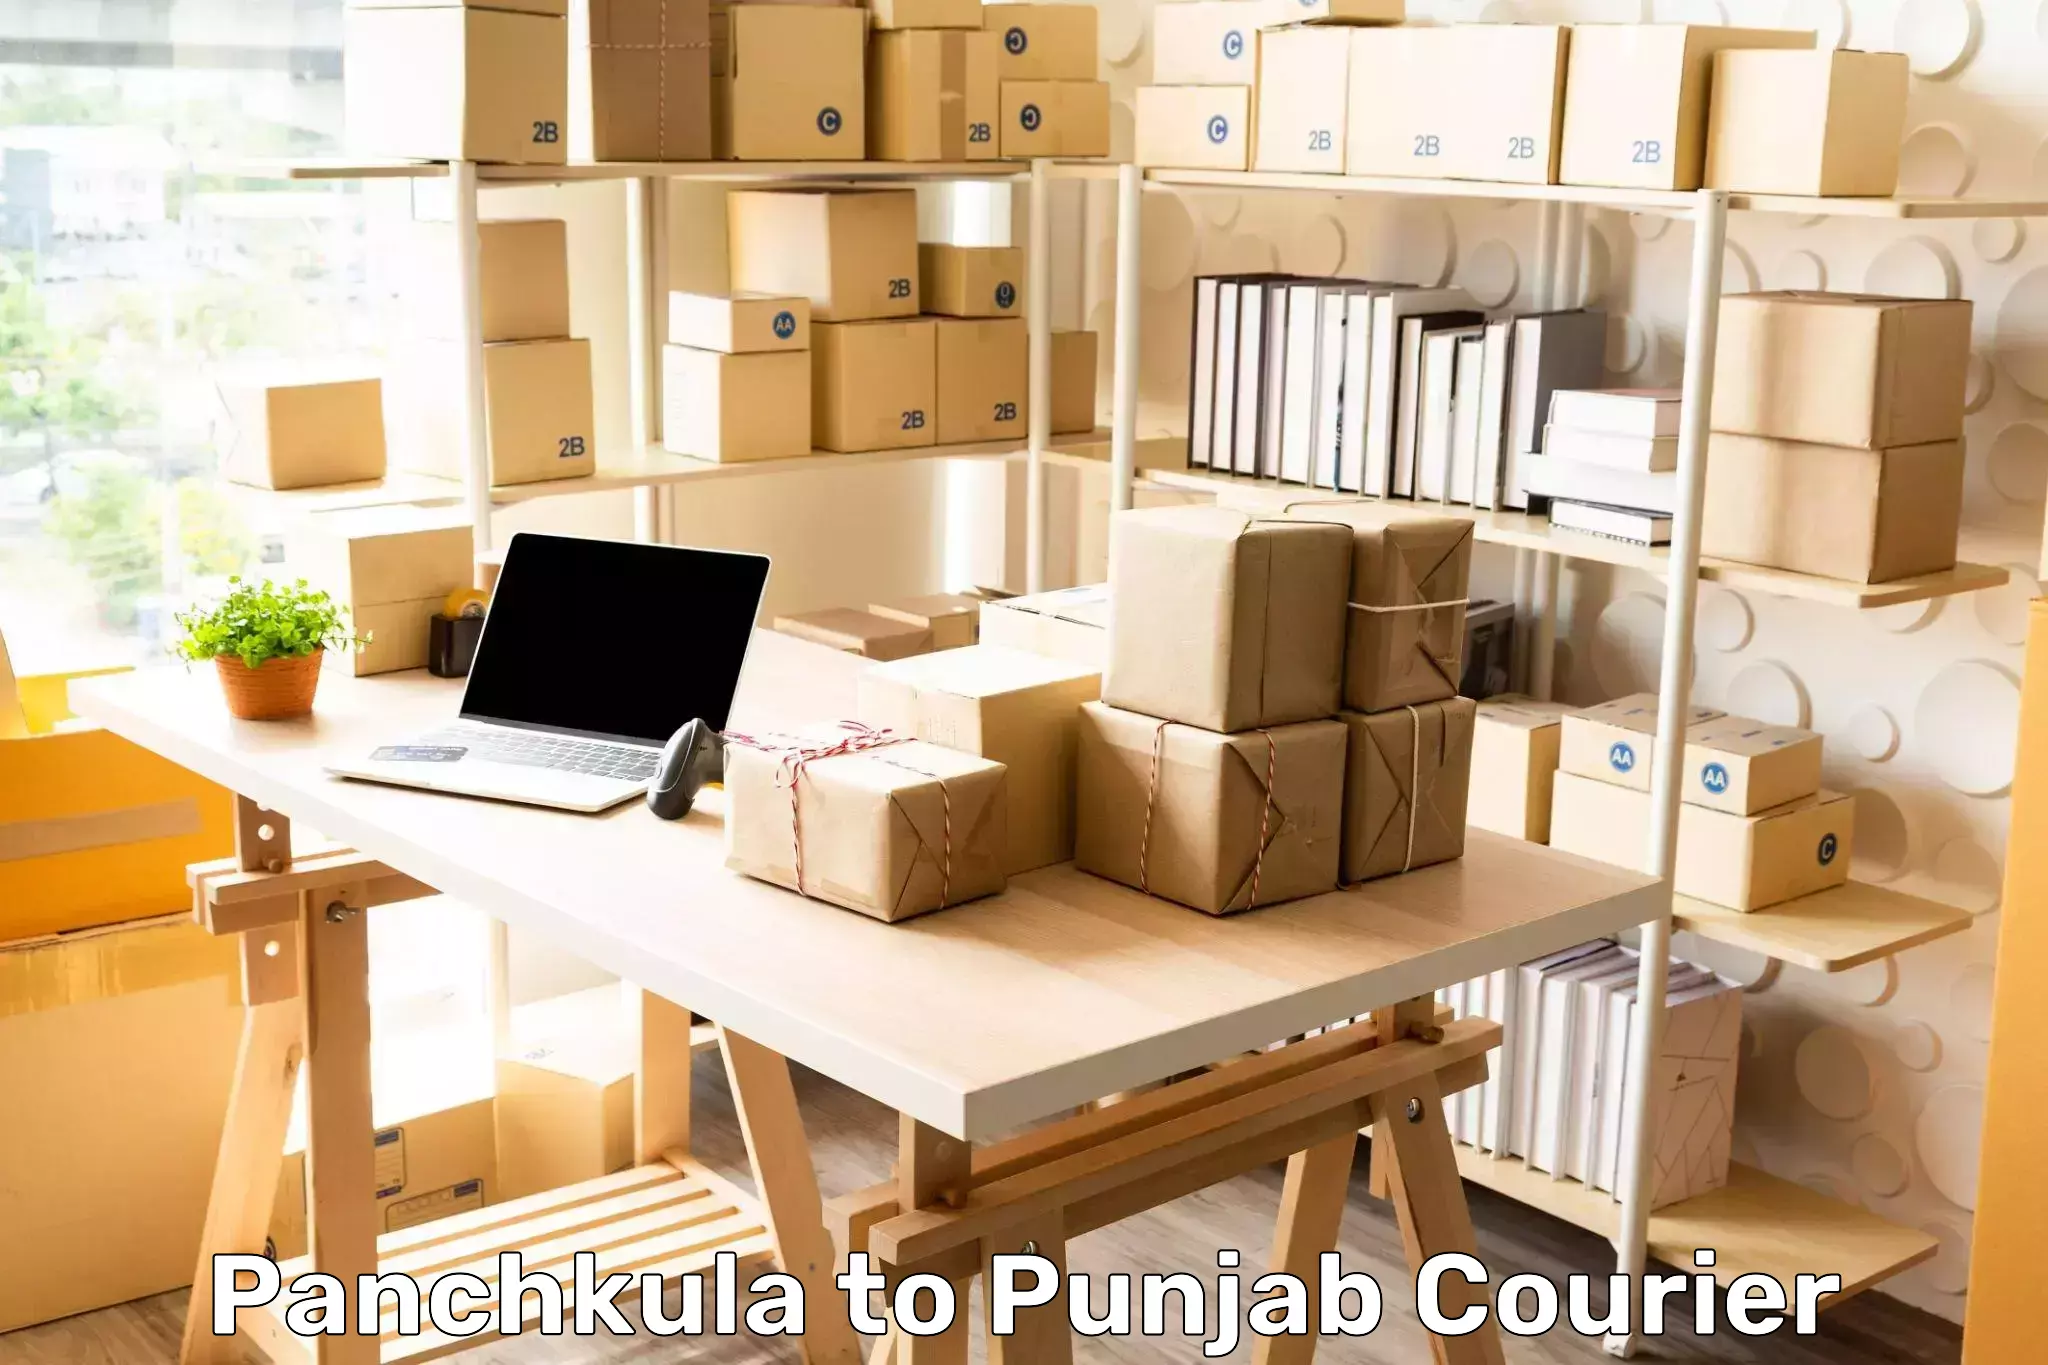 Shipping and handling Panchkula to Begowal